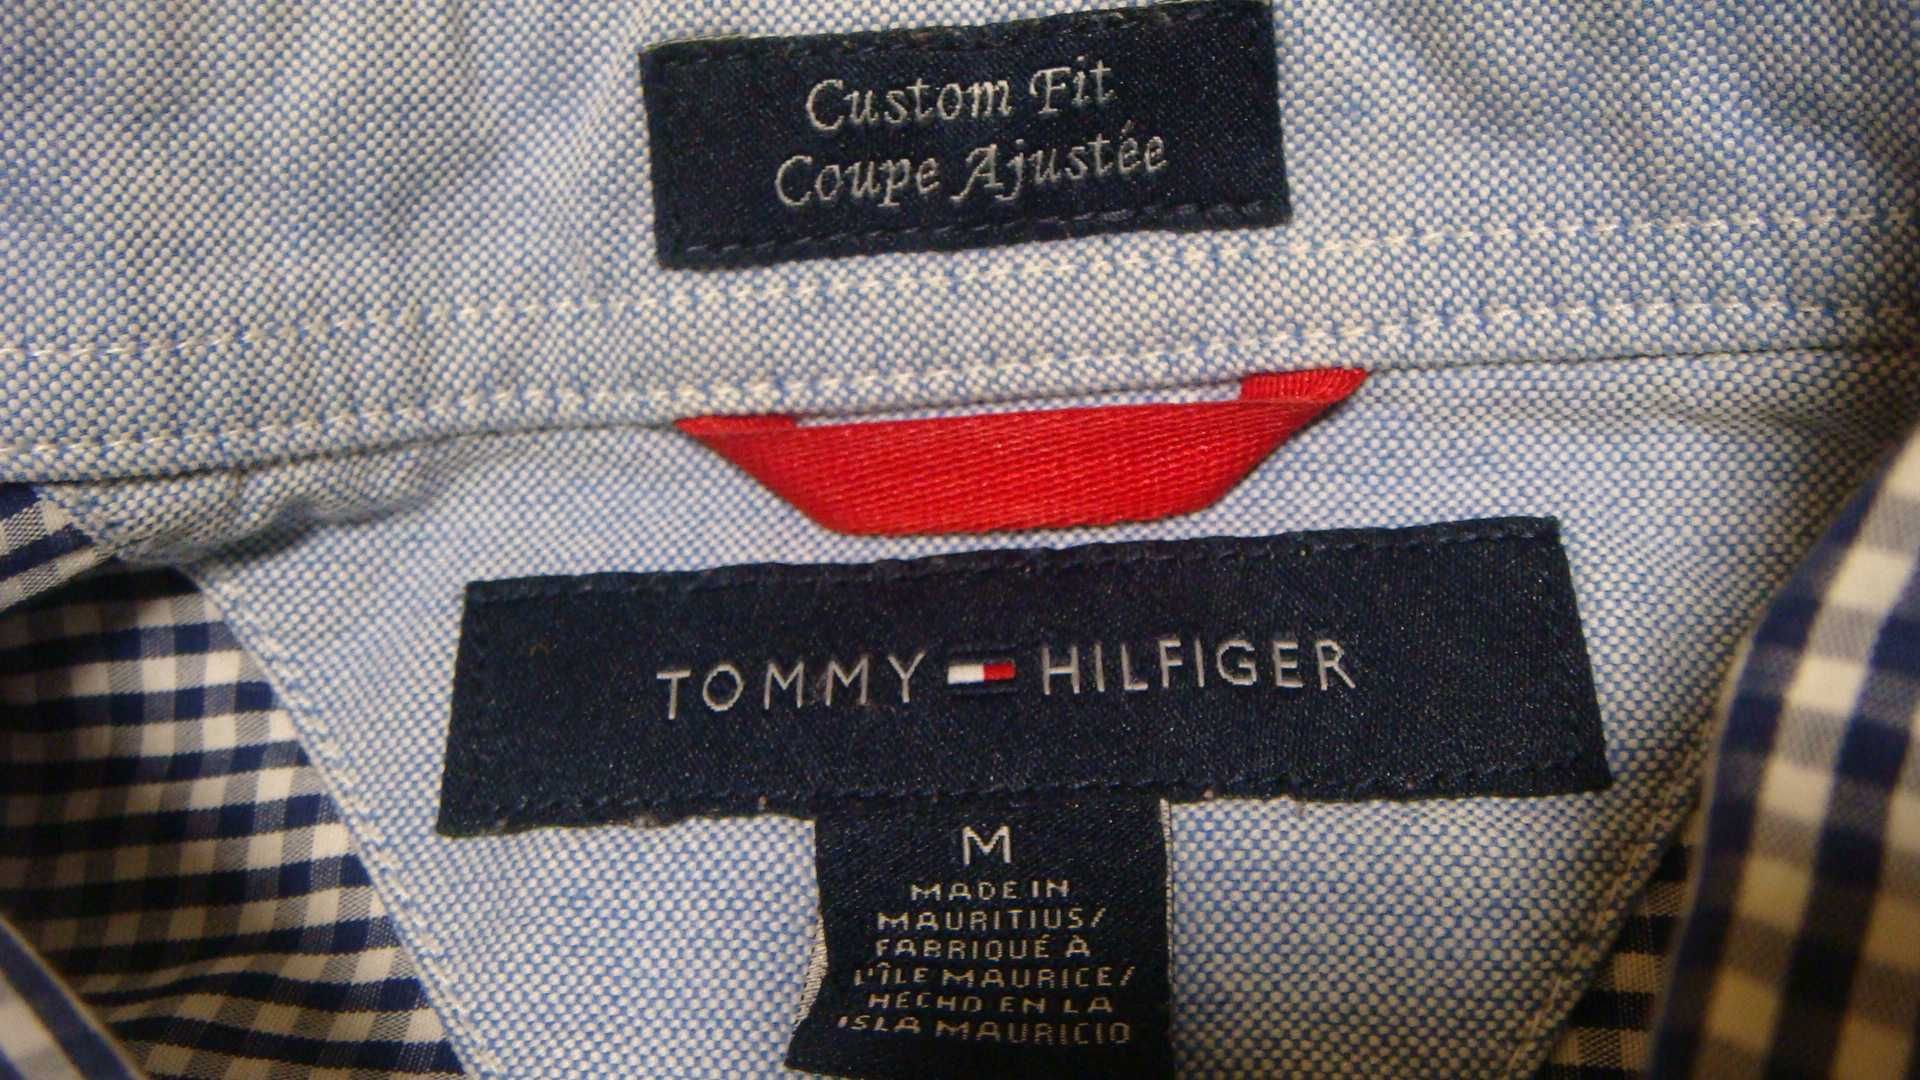 TOMMY HILFIGER рубашка клетка мелкая сине-белая томми хилфигер